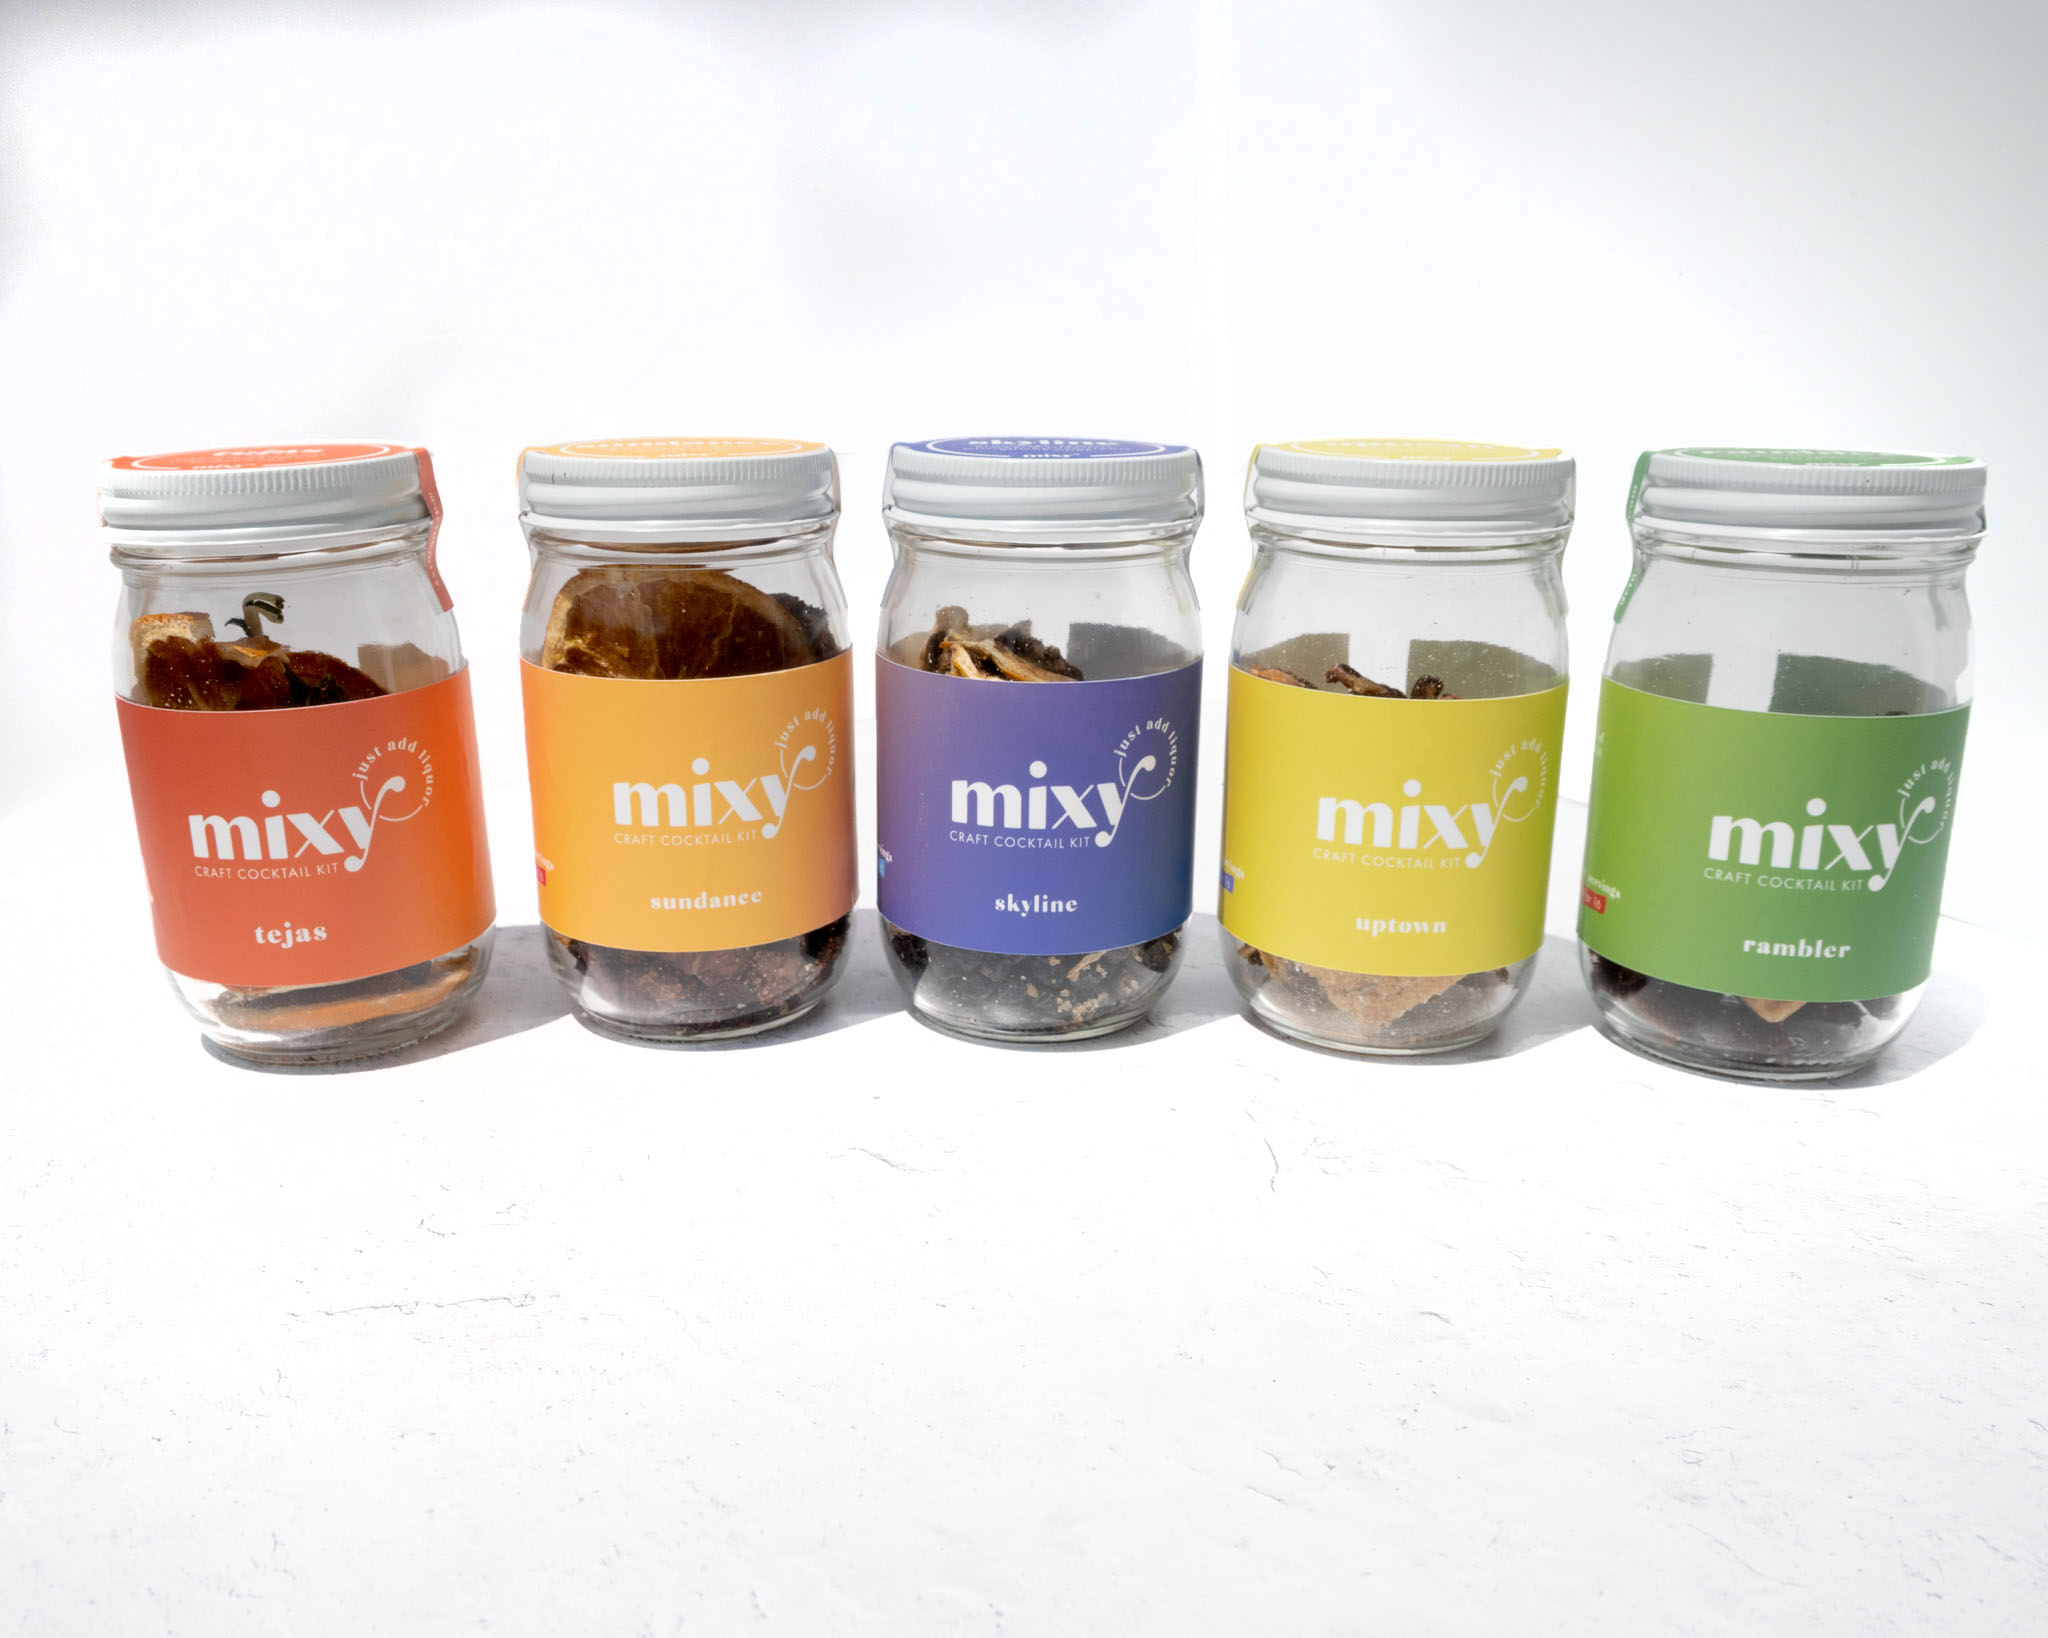 Mixy jars